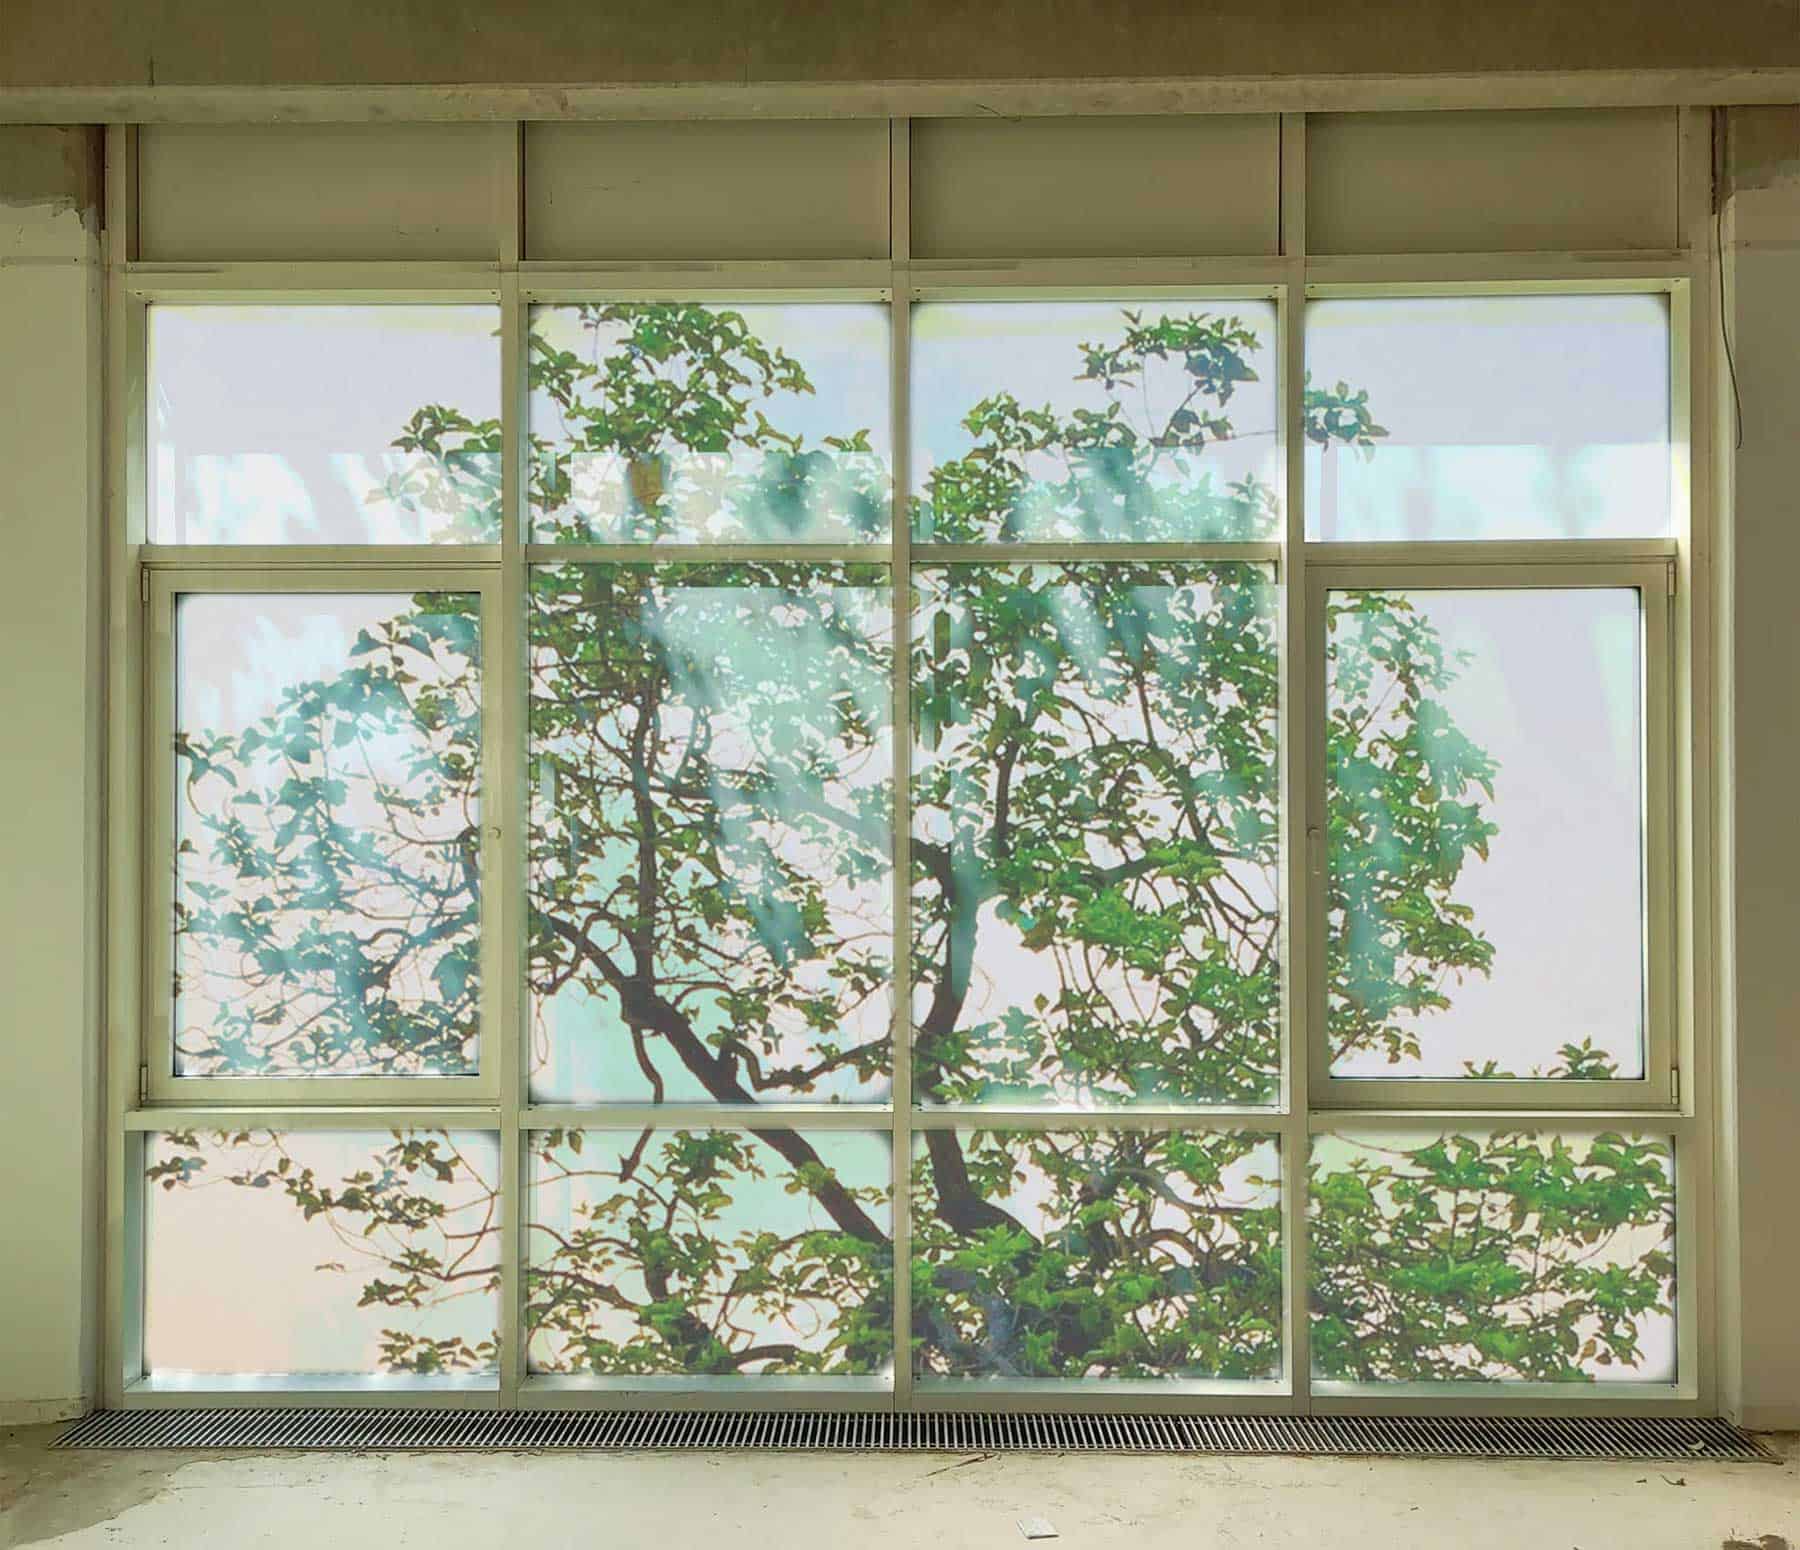 Mehrteiliges bodentiefes Fenster mit Aussicht auf einen Baum - vor der Beklebung.